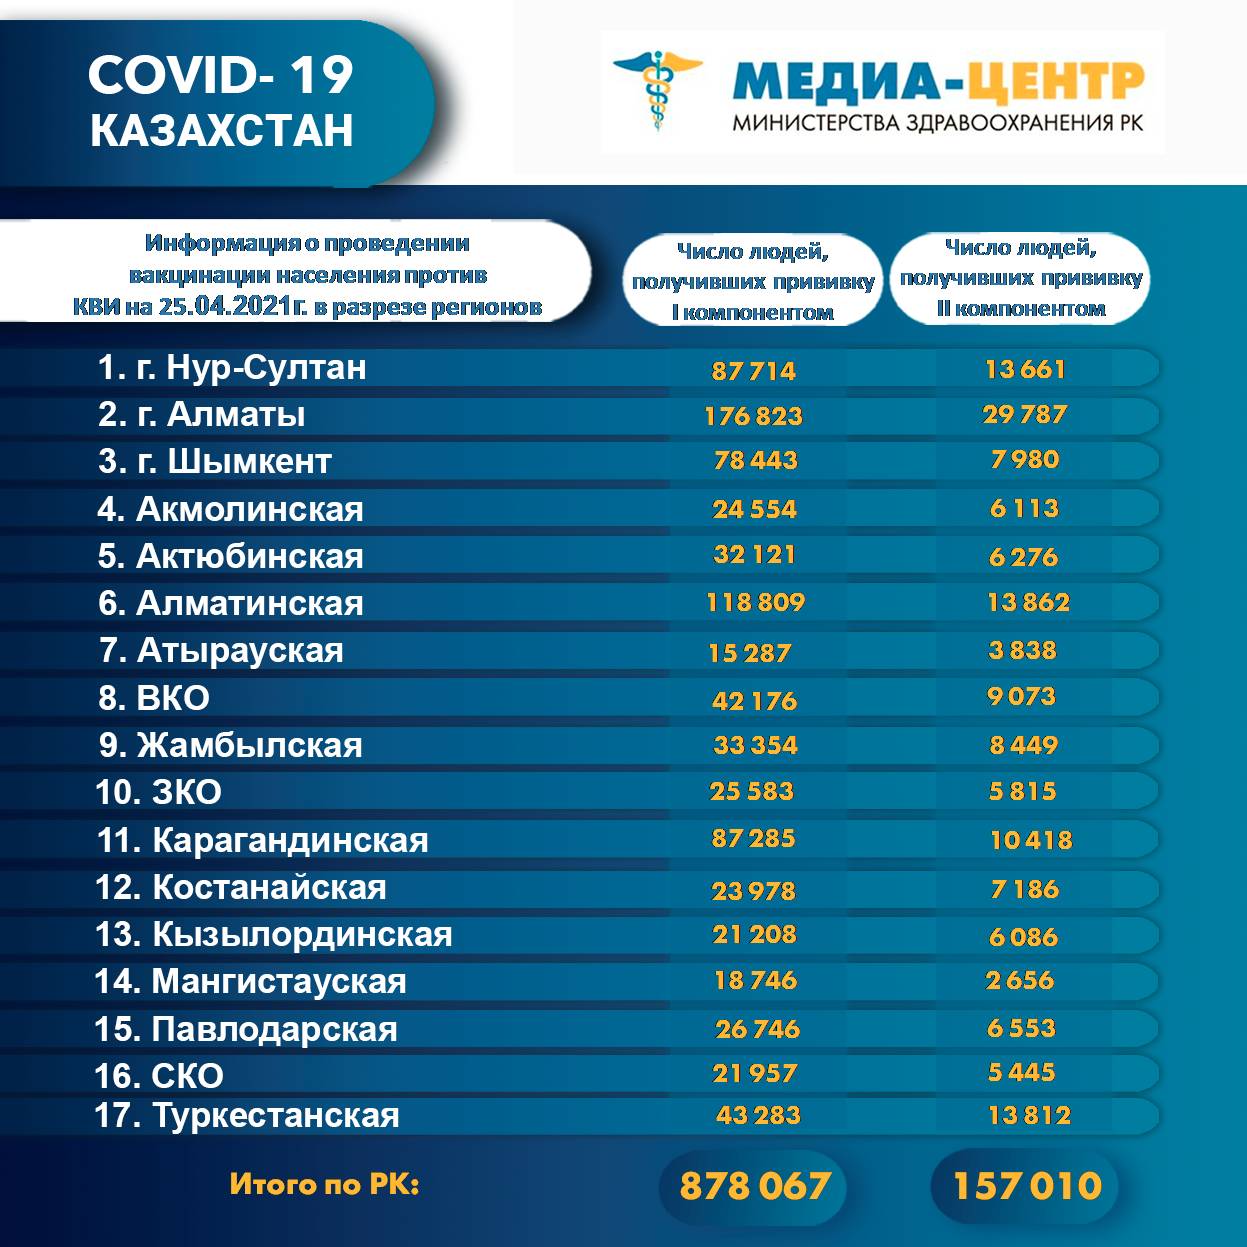 878 067 человек провакцинировано в Казахстане на 25 апреля 2021 г